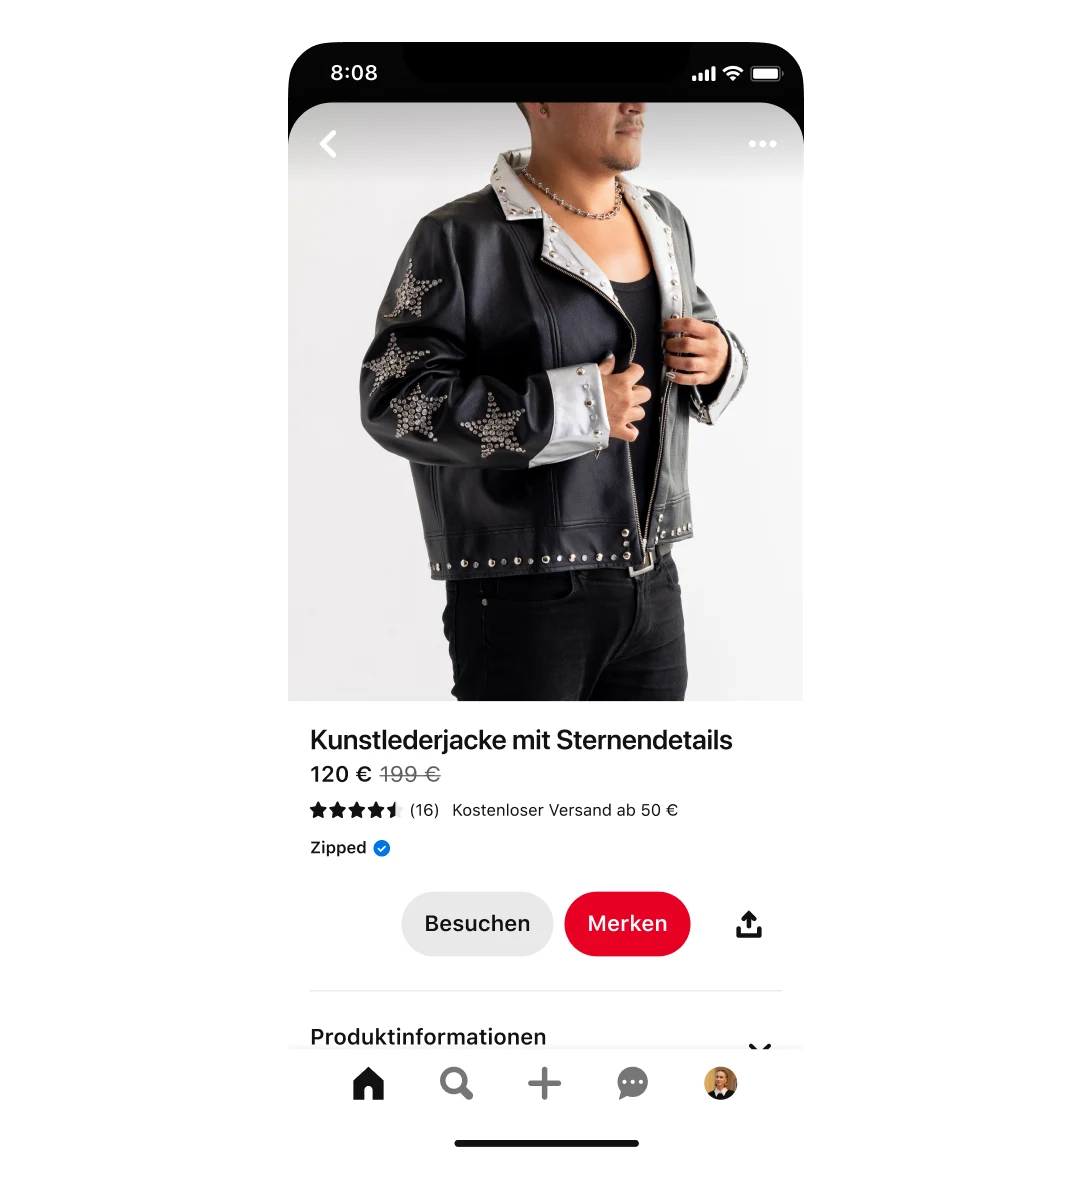 Mobilansicht einer Shopping-Anzeige für eine Kunstlederjacke mit Sternendetails. Die Jacke ist von 199 € auf 120 € reduziert. In der Anzeige ist ein Mann zu sehen, der die Jacke trägt.